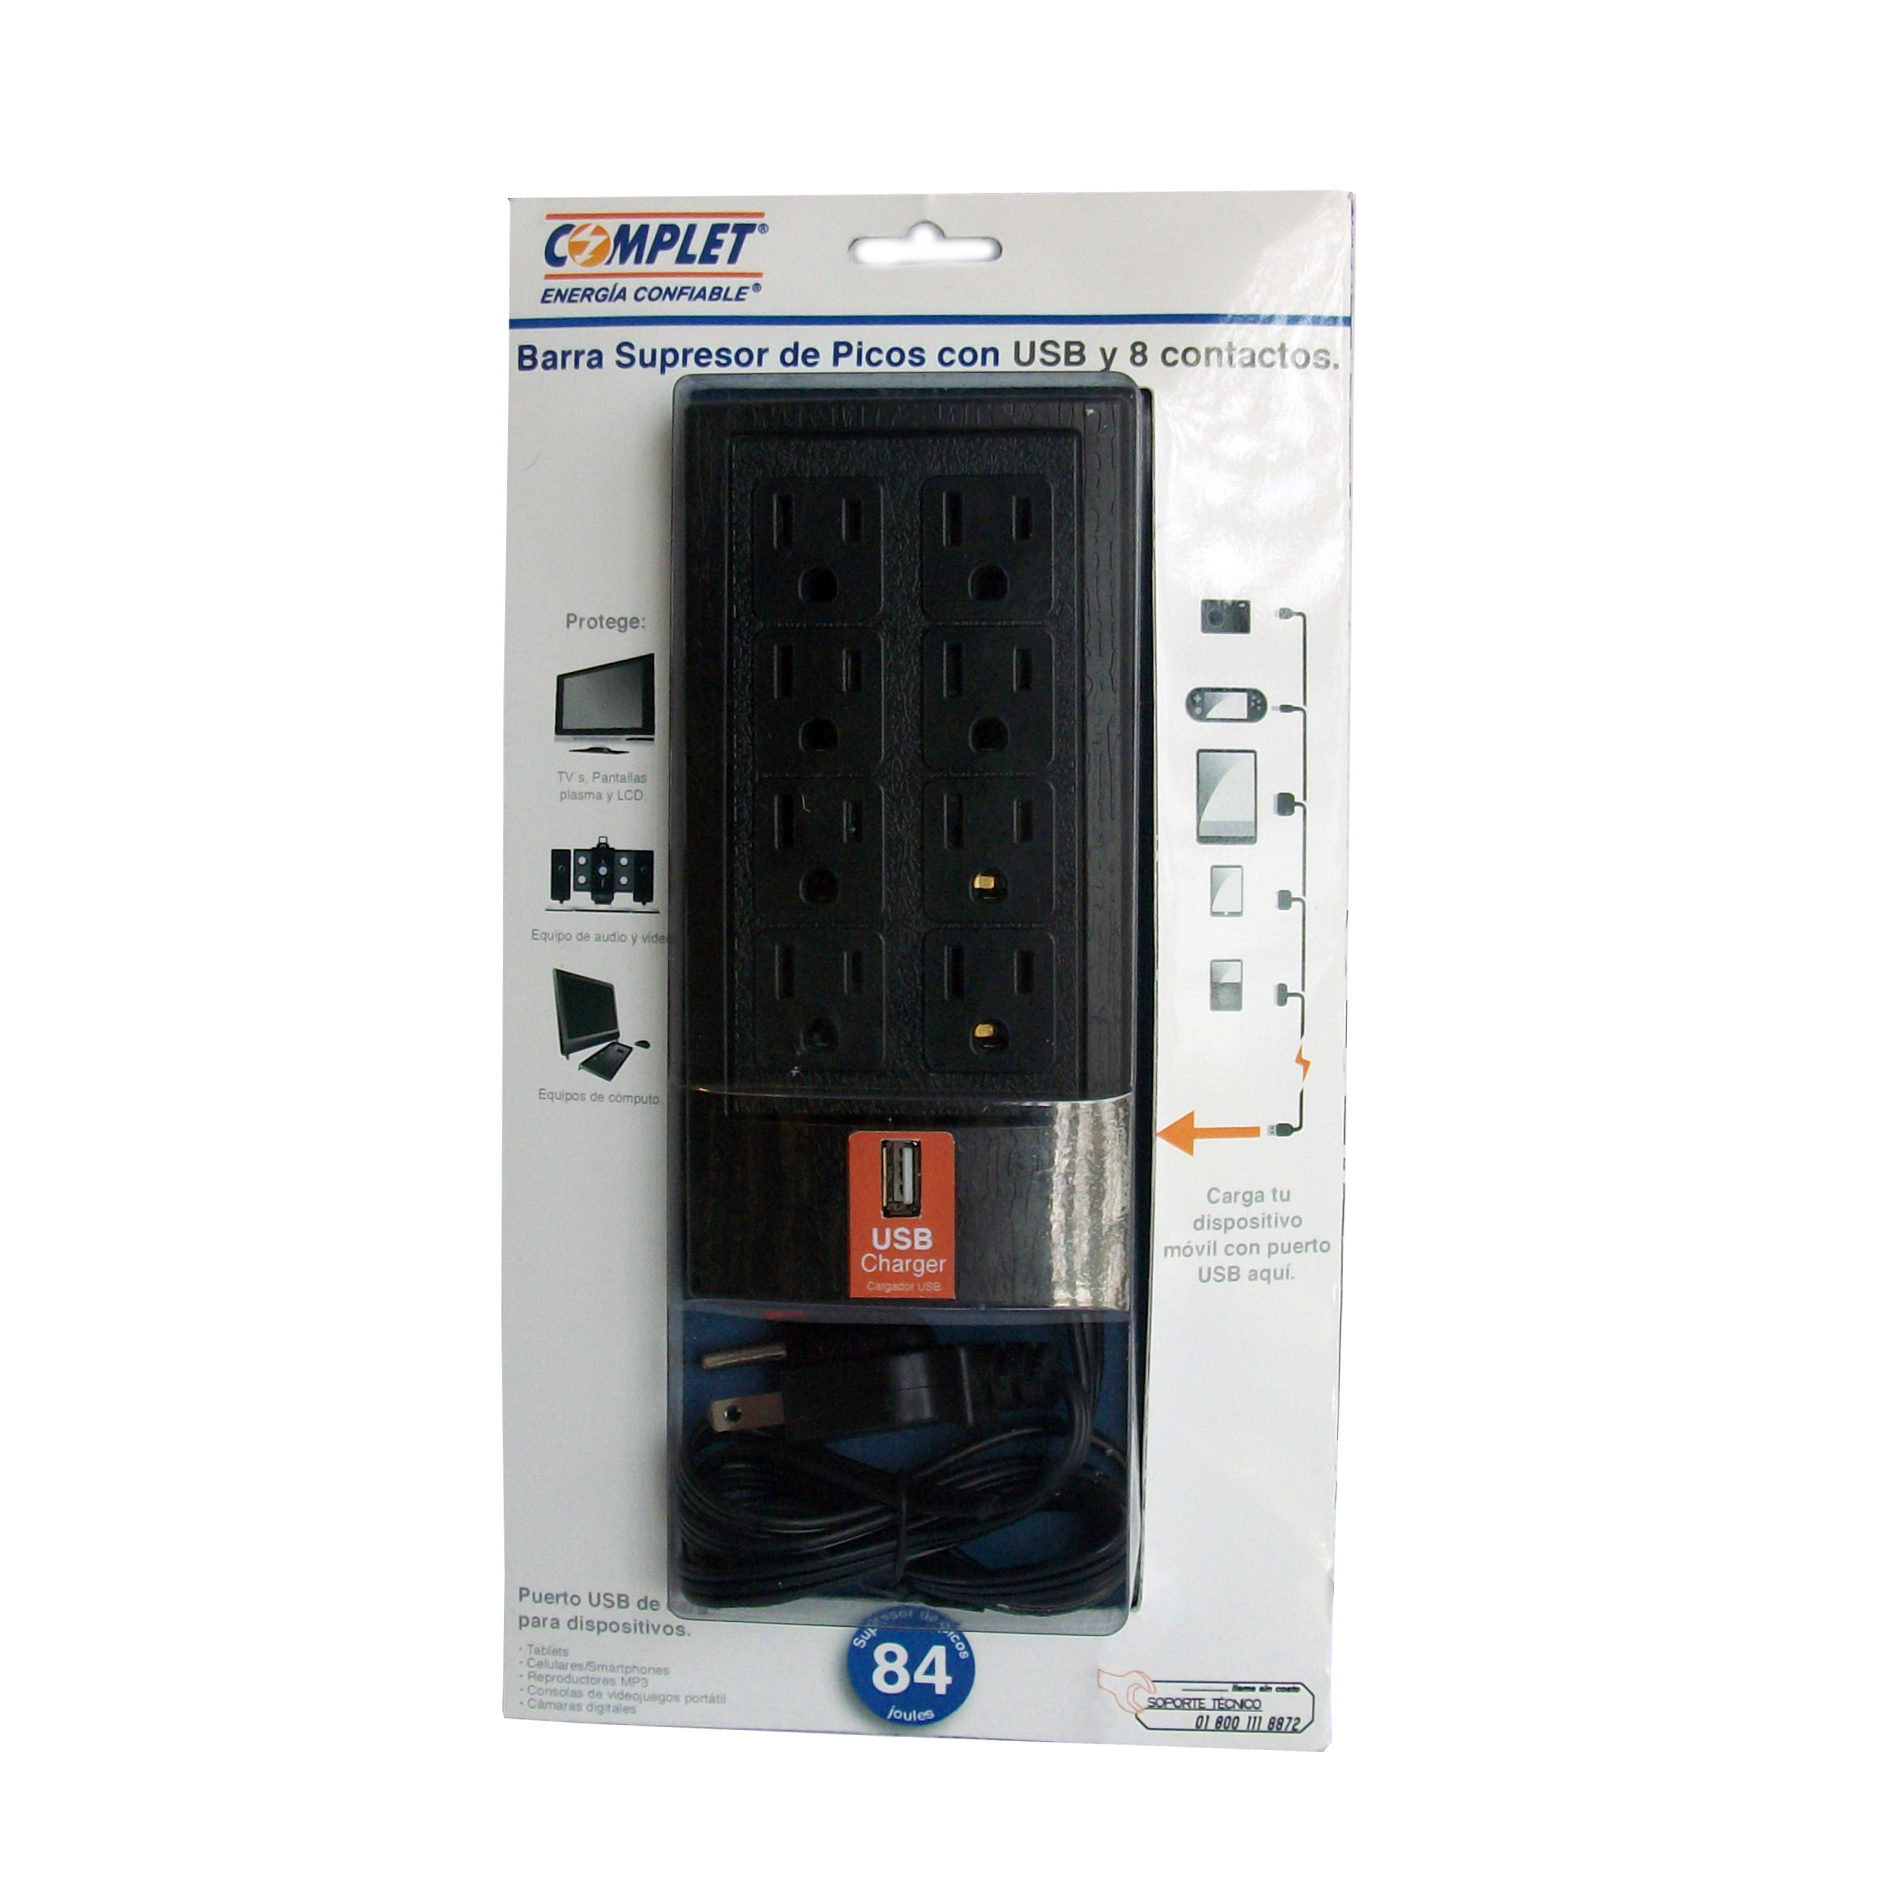 SUPRESOR DE PICOS COMPLET BRC-1-005 750W/1 USB CARGA/8 CONT